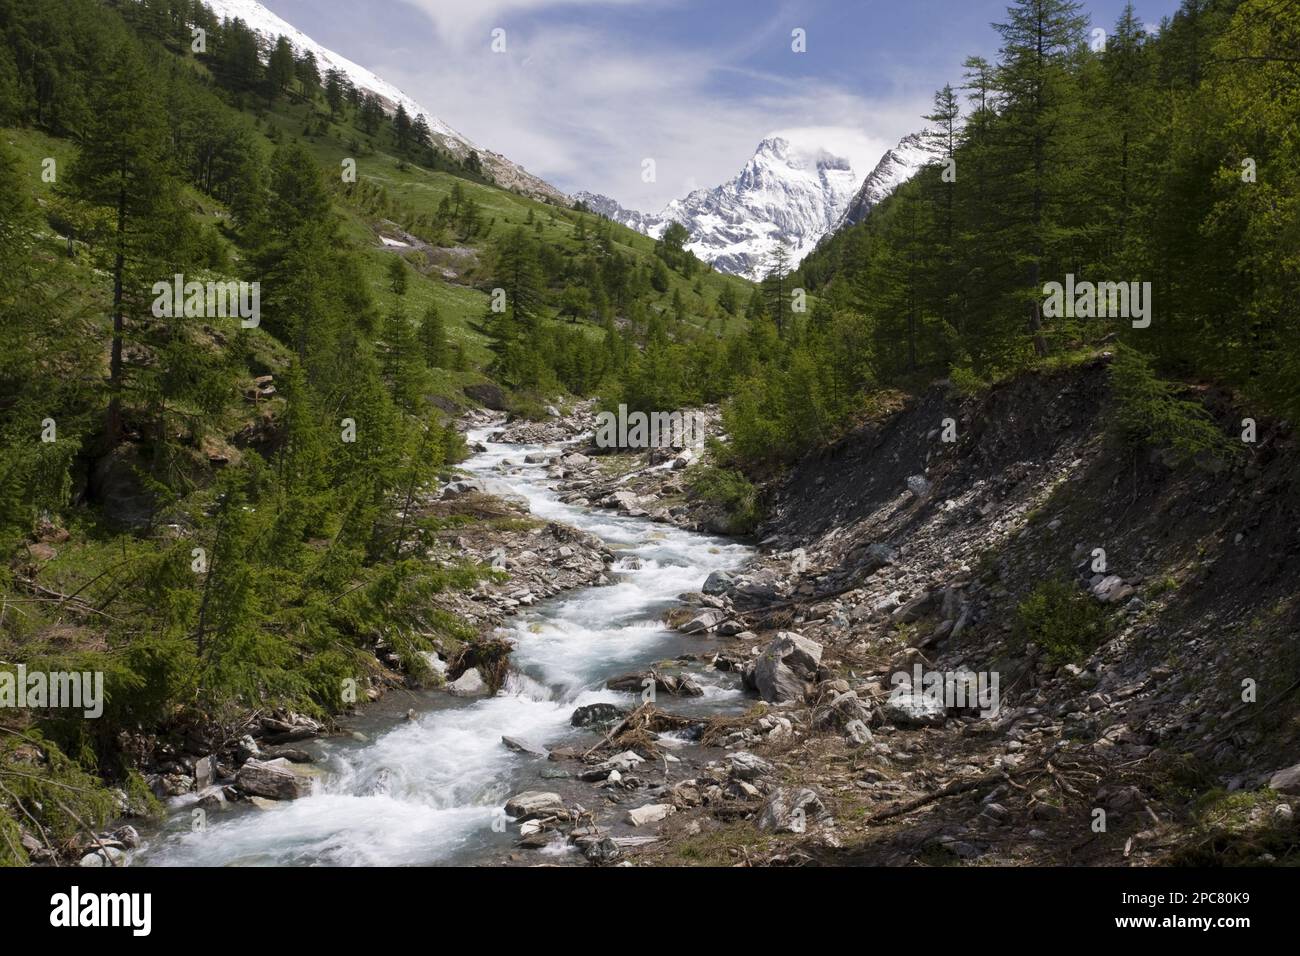 Rivière alpine dans un environnement de vallée boisée, vue vers Monte Viso (en Italie), vallée de Guil, Parc naturel régional du Queyras, Alpes, France, Europe Banque D'Images